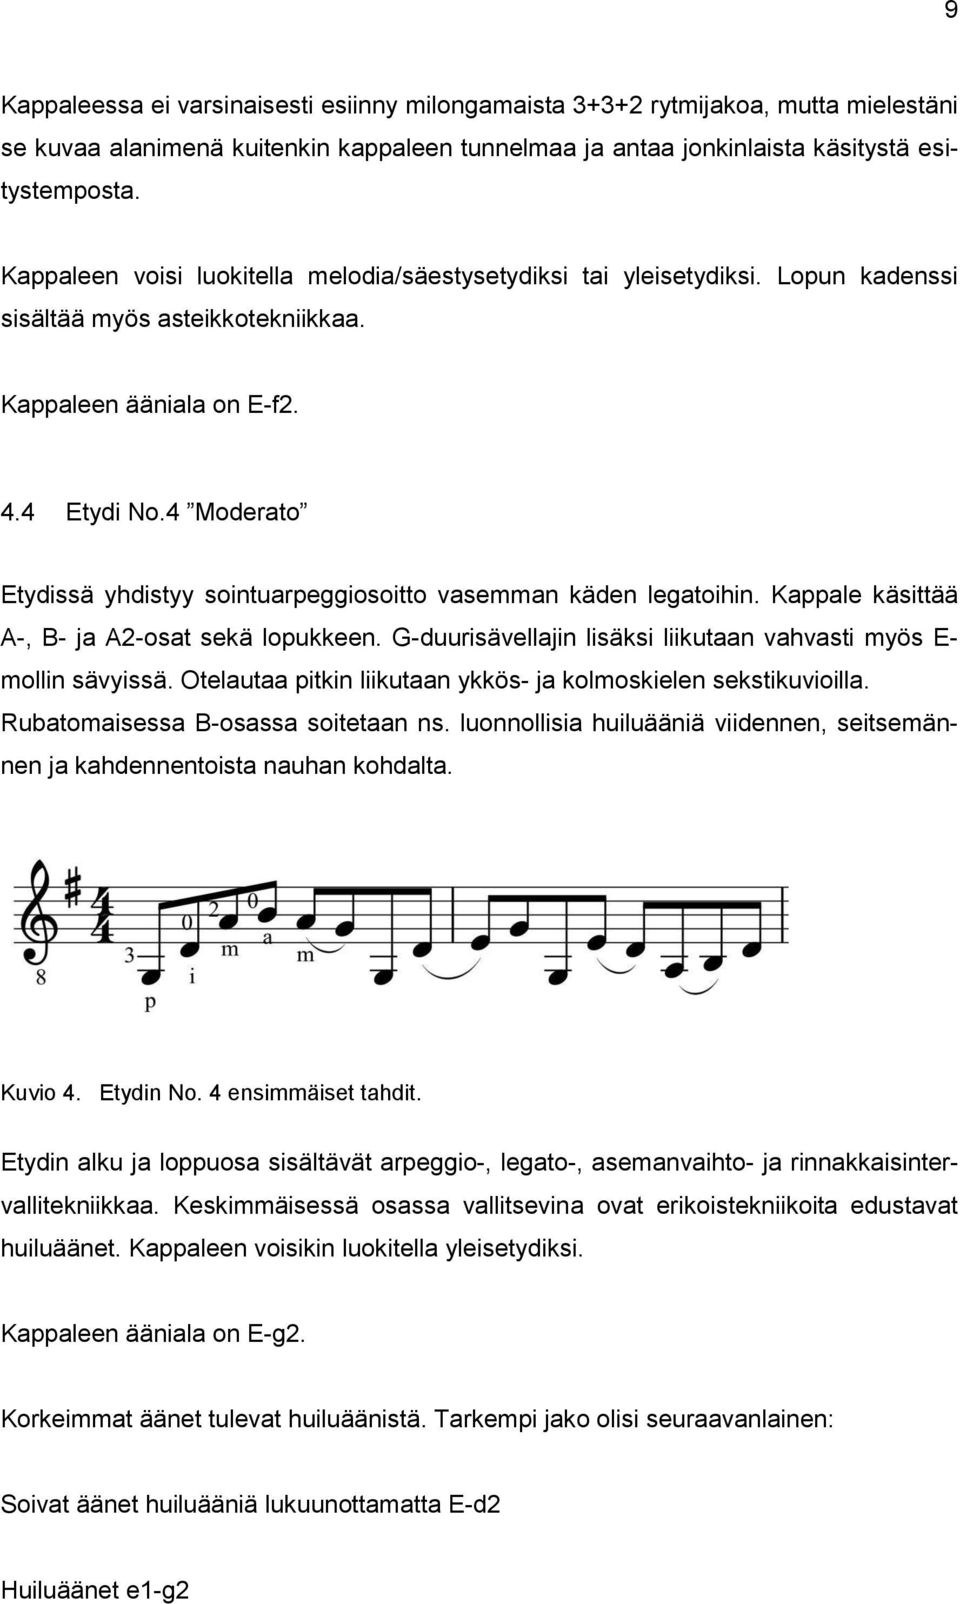 4 Moderato Etydissä yhdistyy sointuarpeggiosoitto vasemman käden legatoihin. Kappale käsittää A-, B- ja A2-osat sekä lopukkeen. G-duurisävellajin lisäksi liikutaan vahvasti myös E- mollin sävyissä.